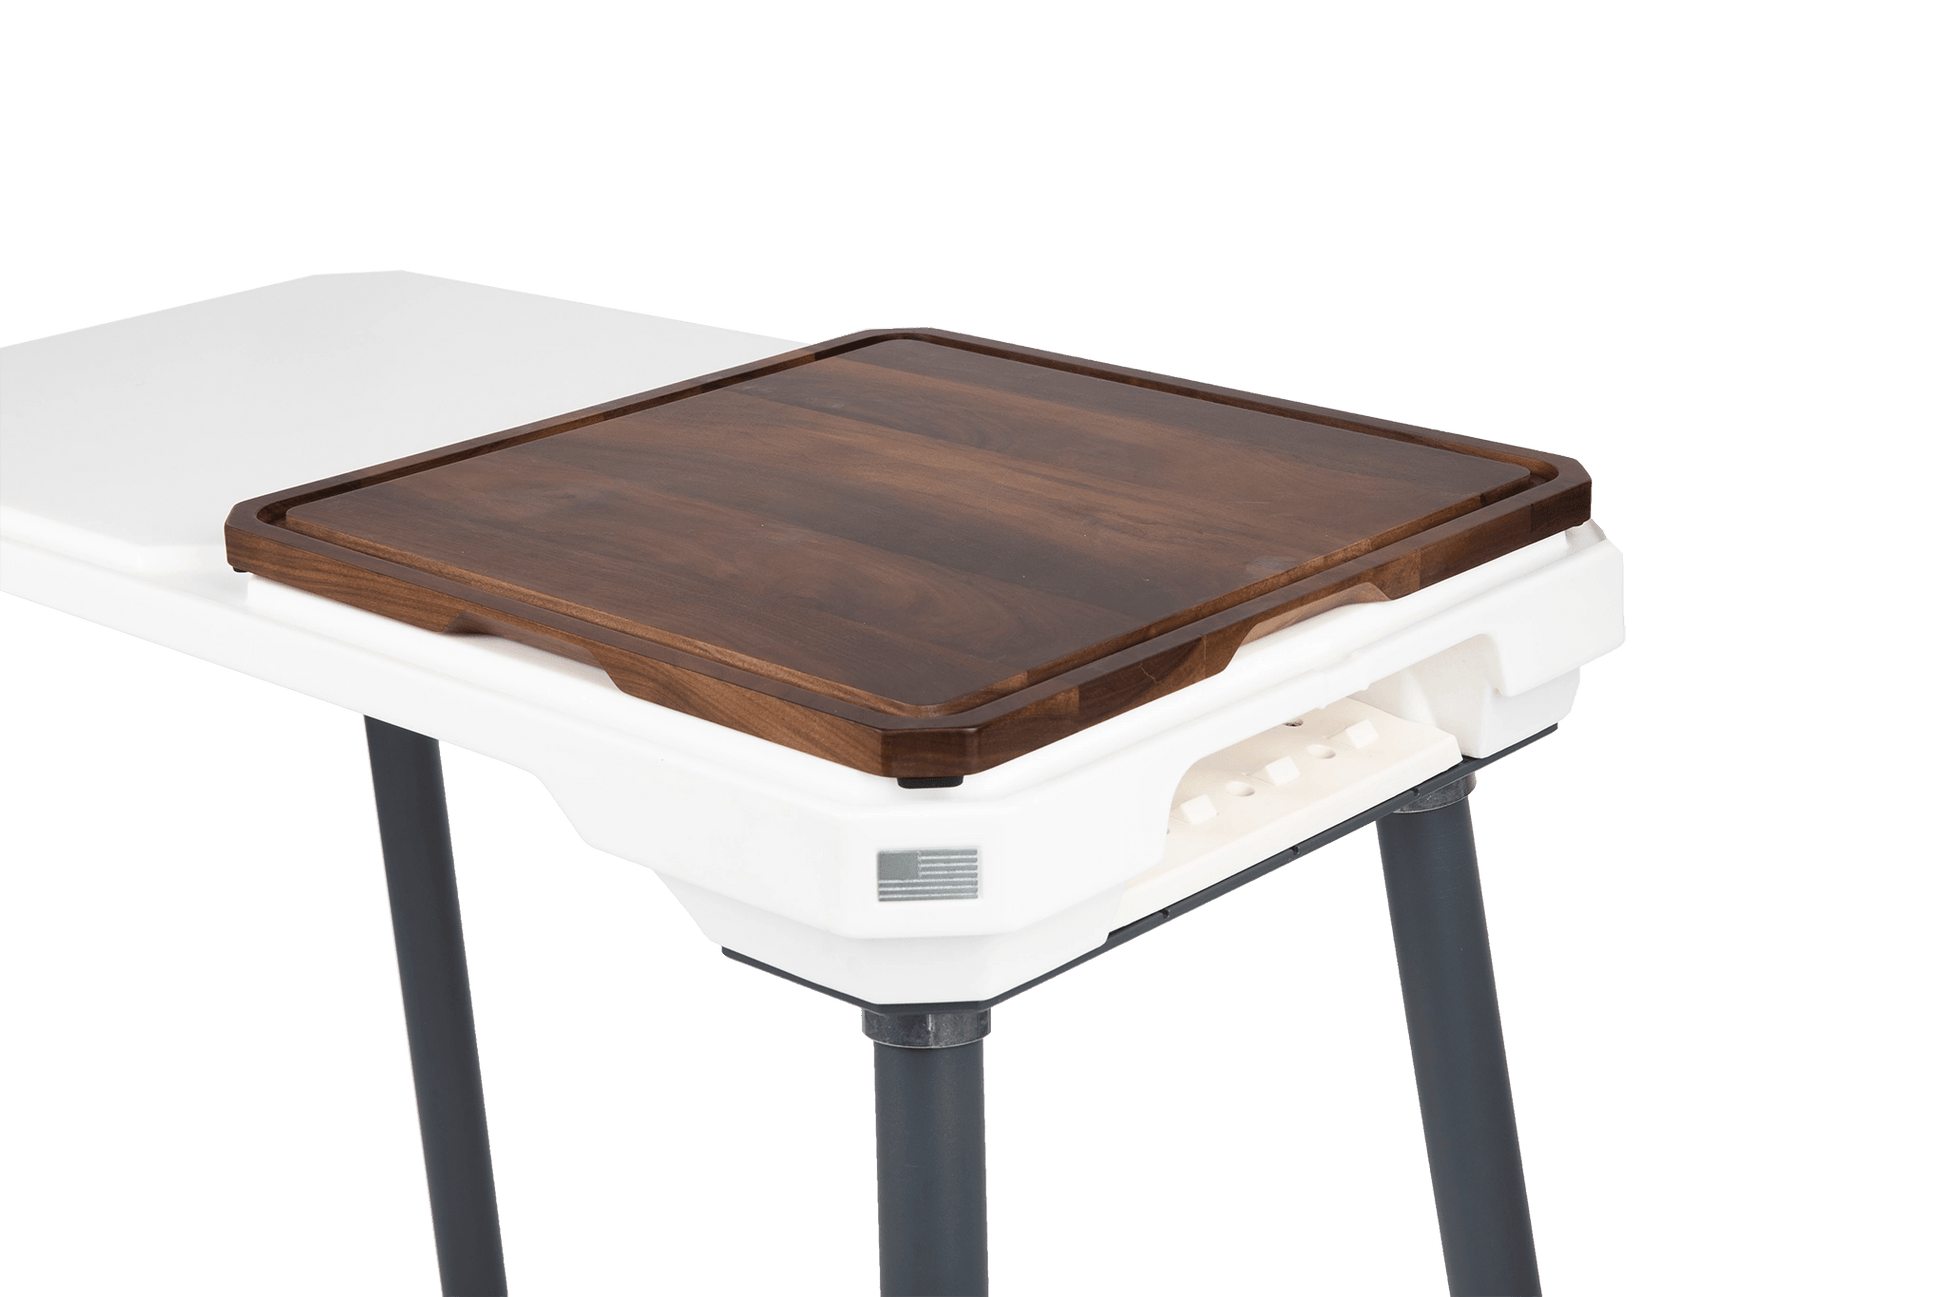 PECOS RichLite Cutting Board – PECOS Outdoor